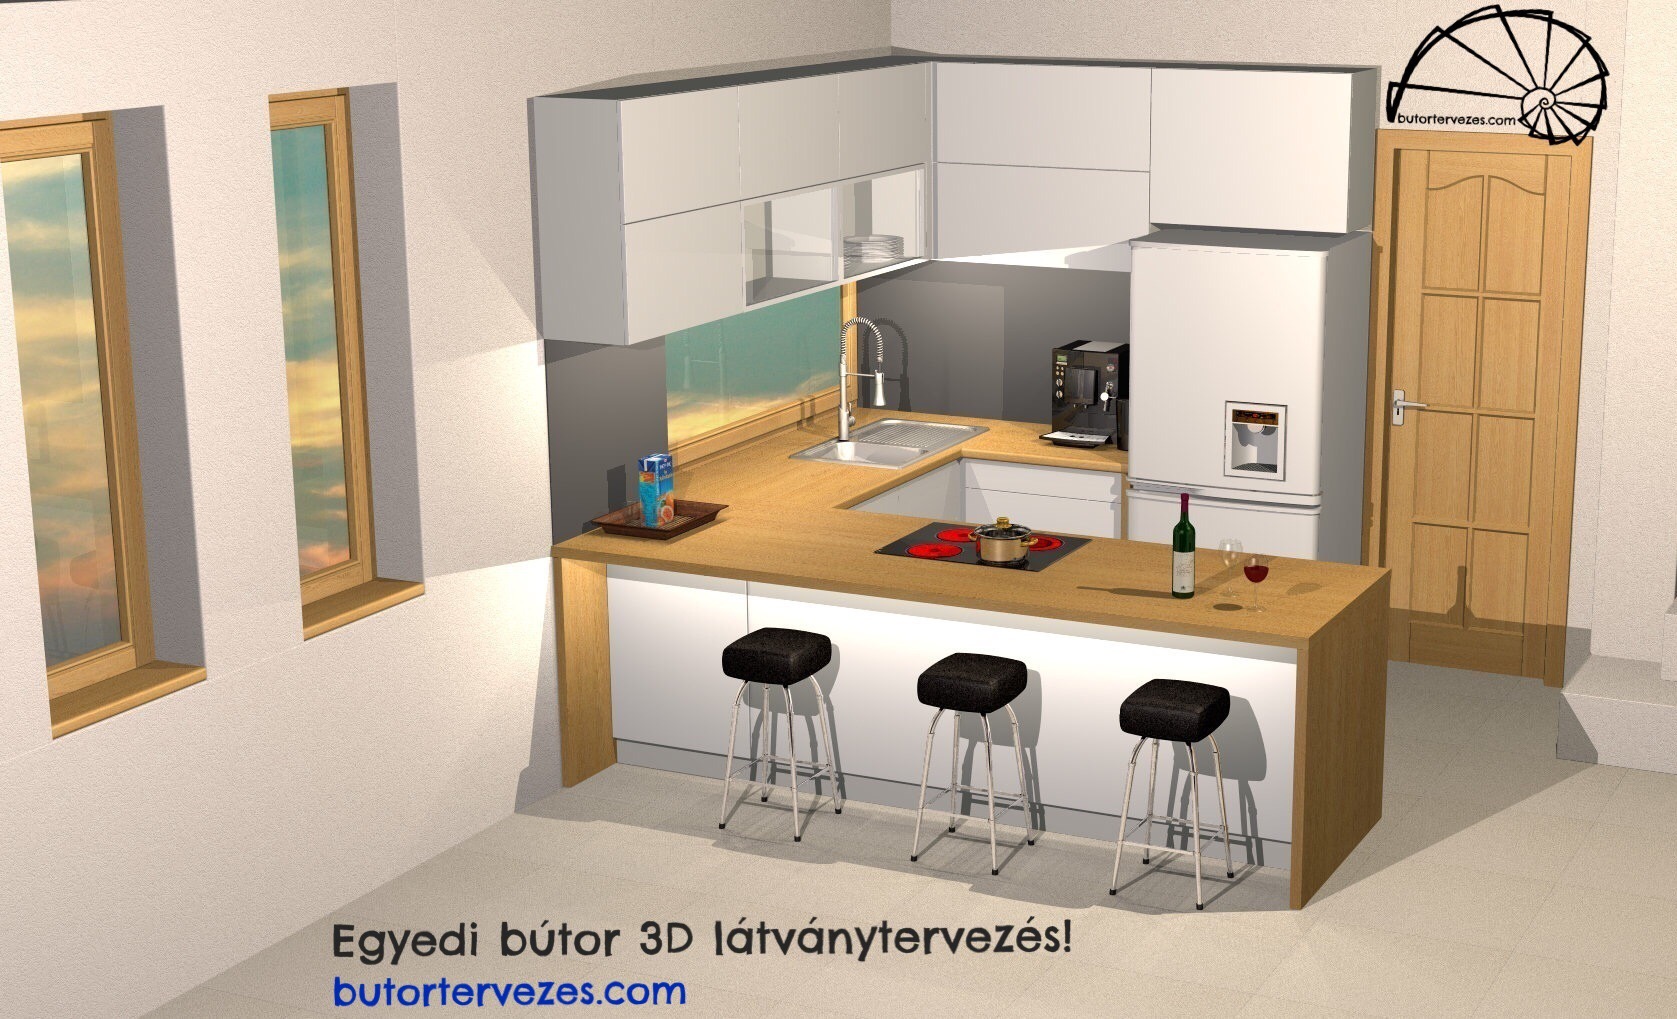 Egyedi konyhabútor 3D fotorealisztikus látványterv